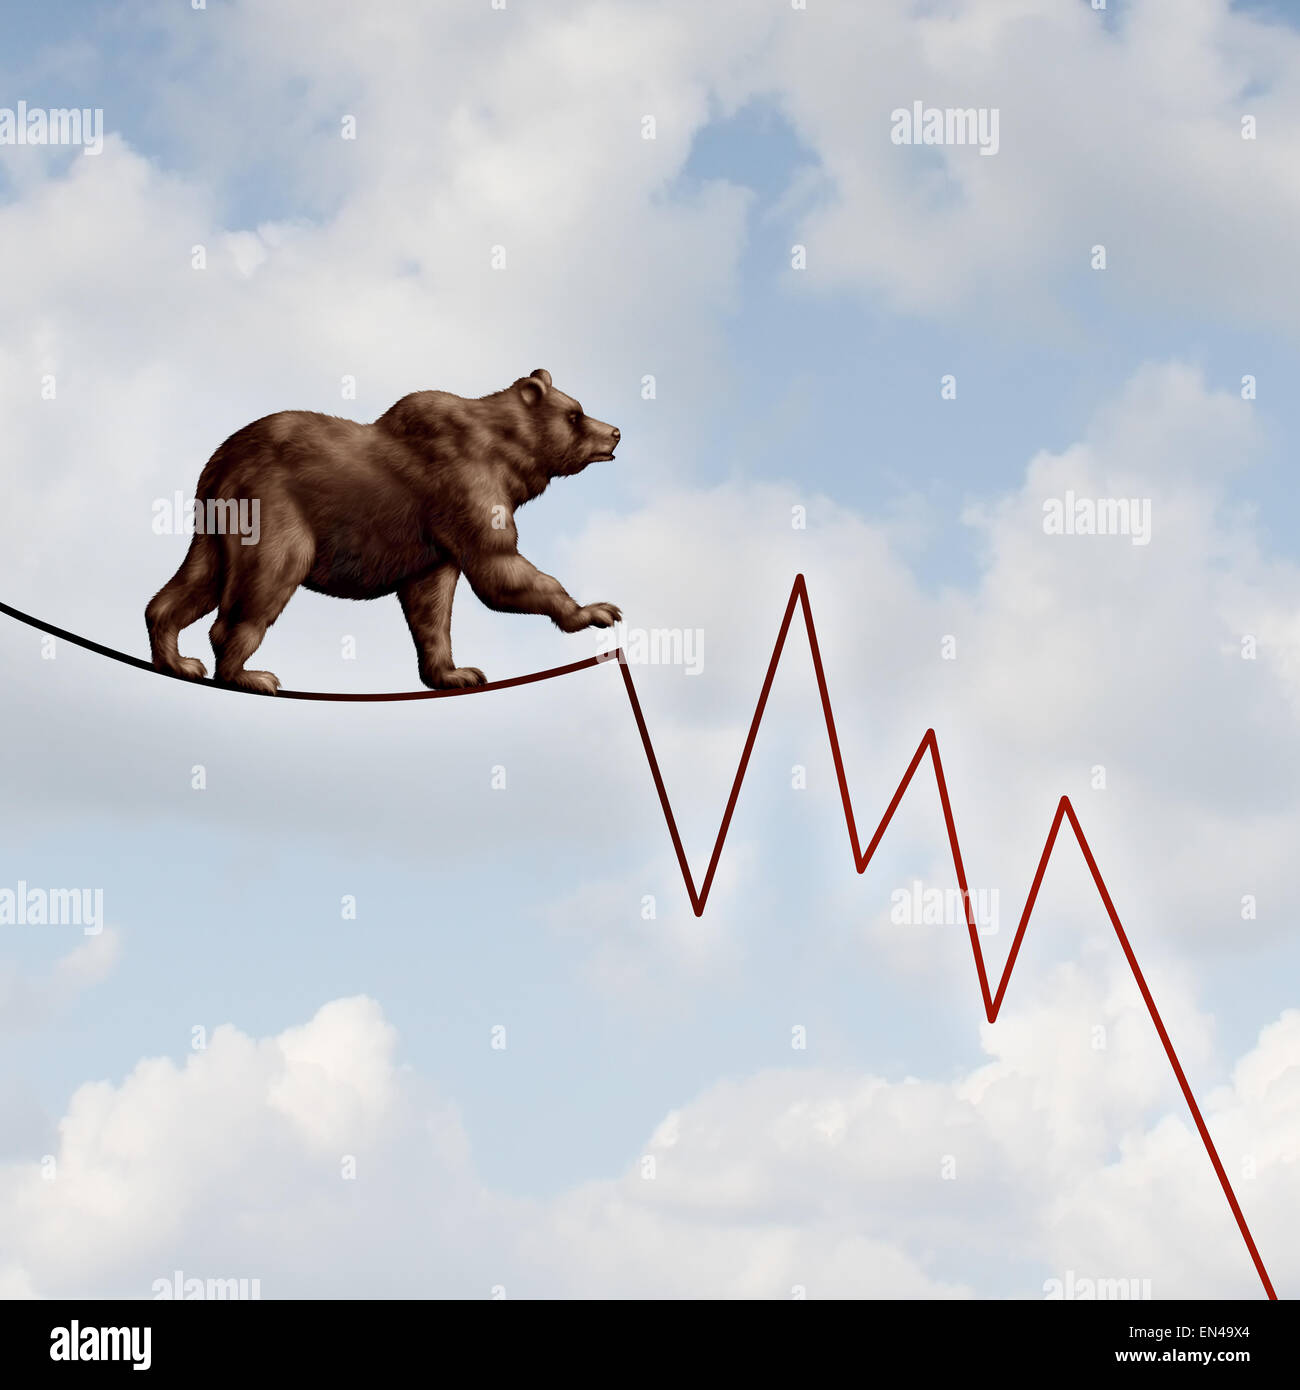 Marché de l'ours comme un concept financier risque baissier lourde bête marchant sur un fil en forme de perte de marché boursier graphique diagramme représentant le risque d'investissement à venir. Banque D'Images